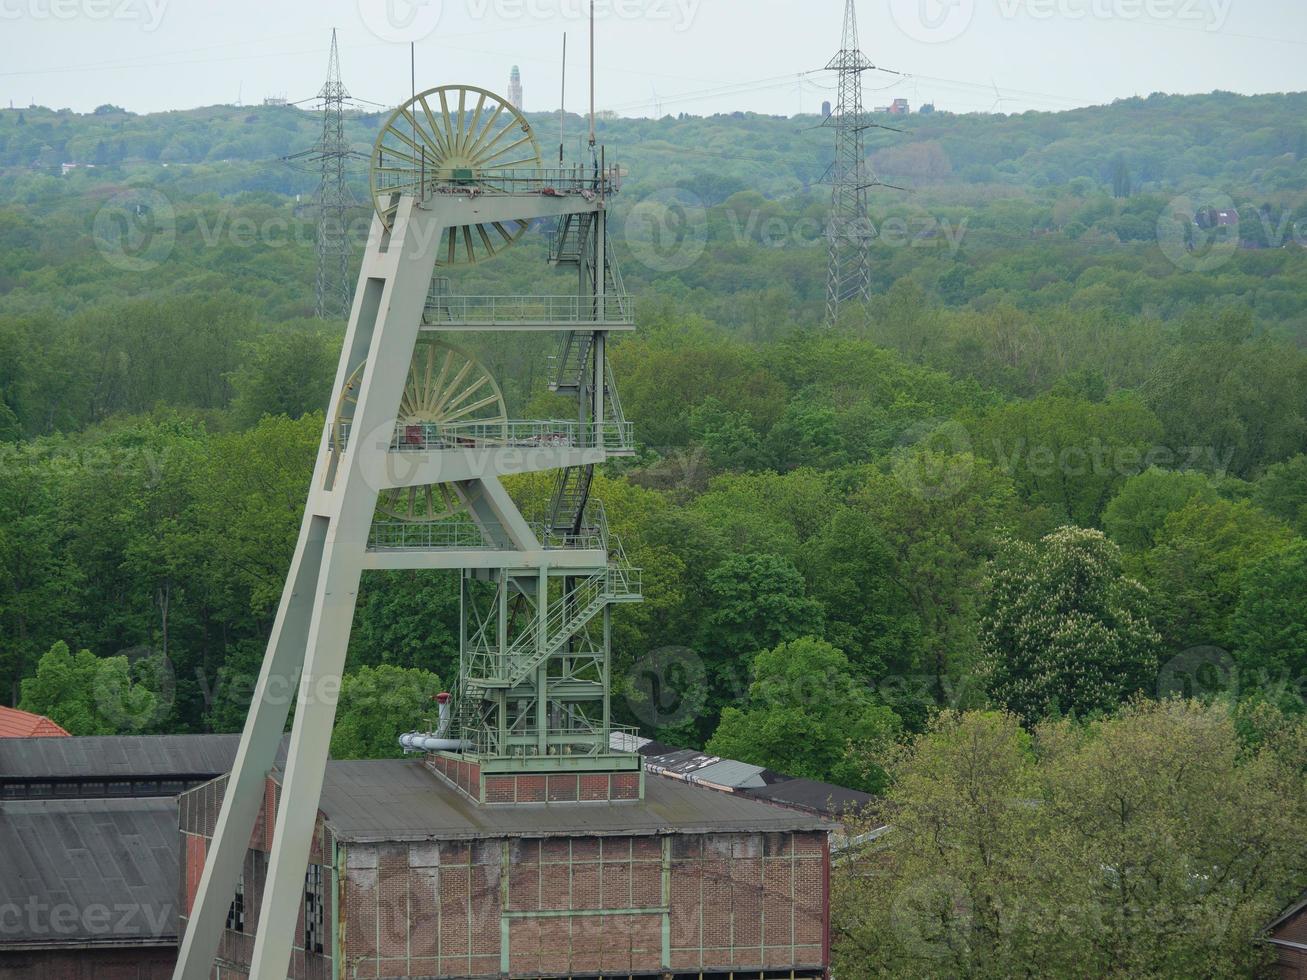 Ancienne mine de charbon dans la région de la Ruhr allemande photo